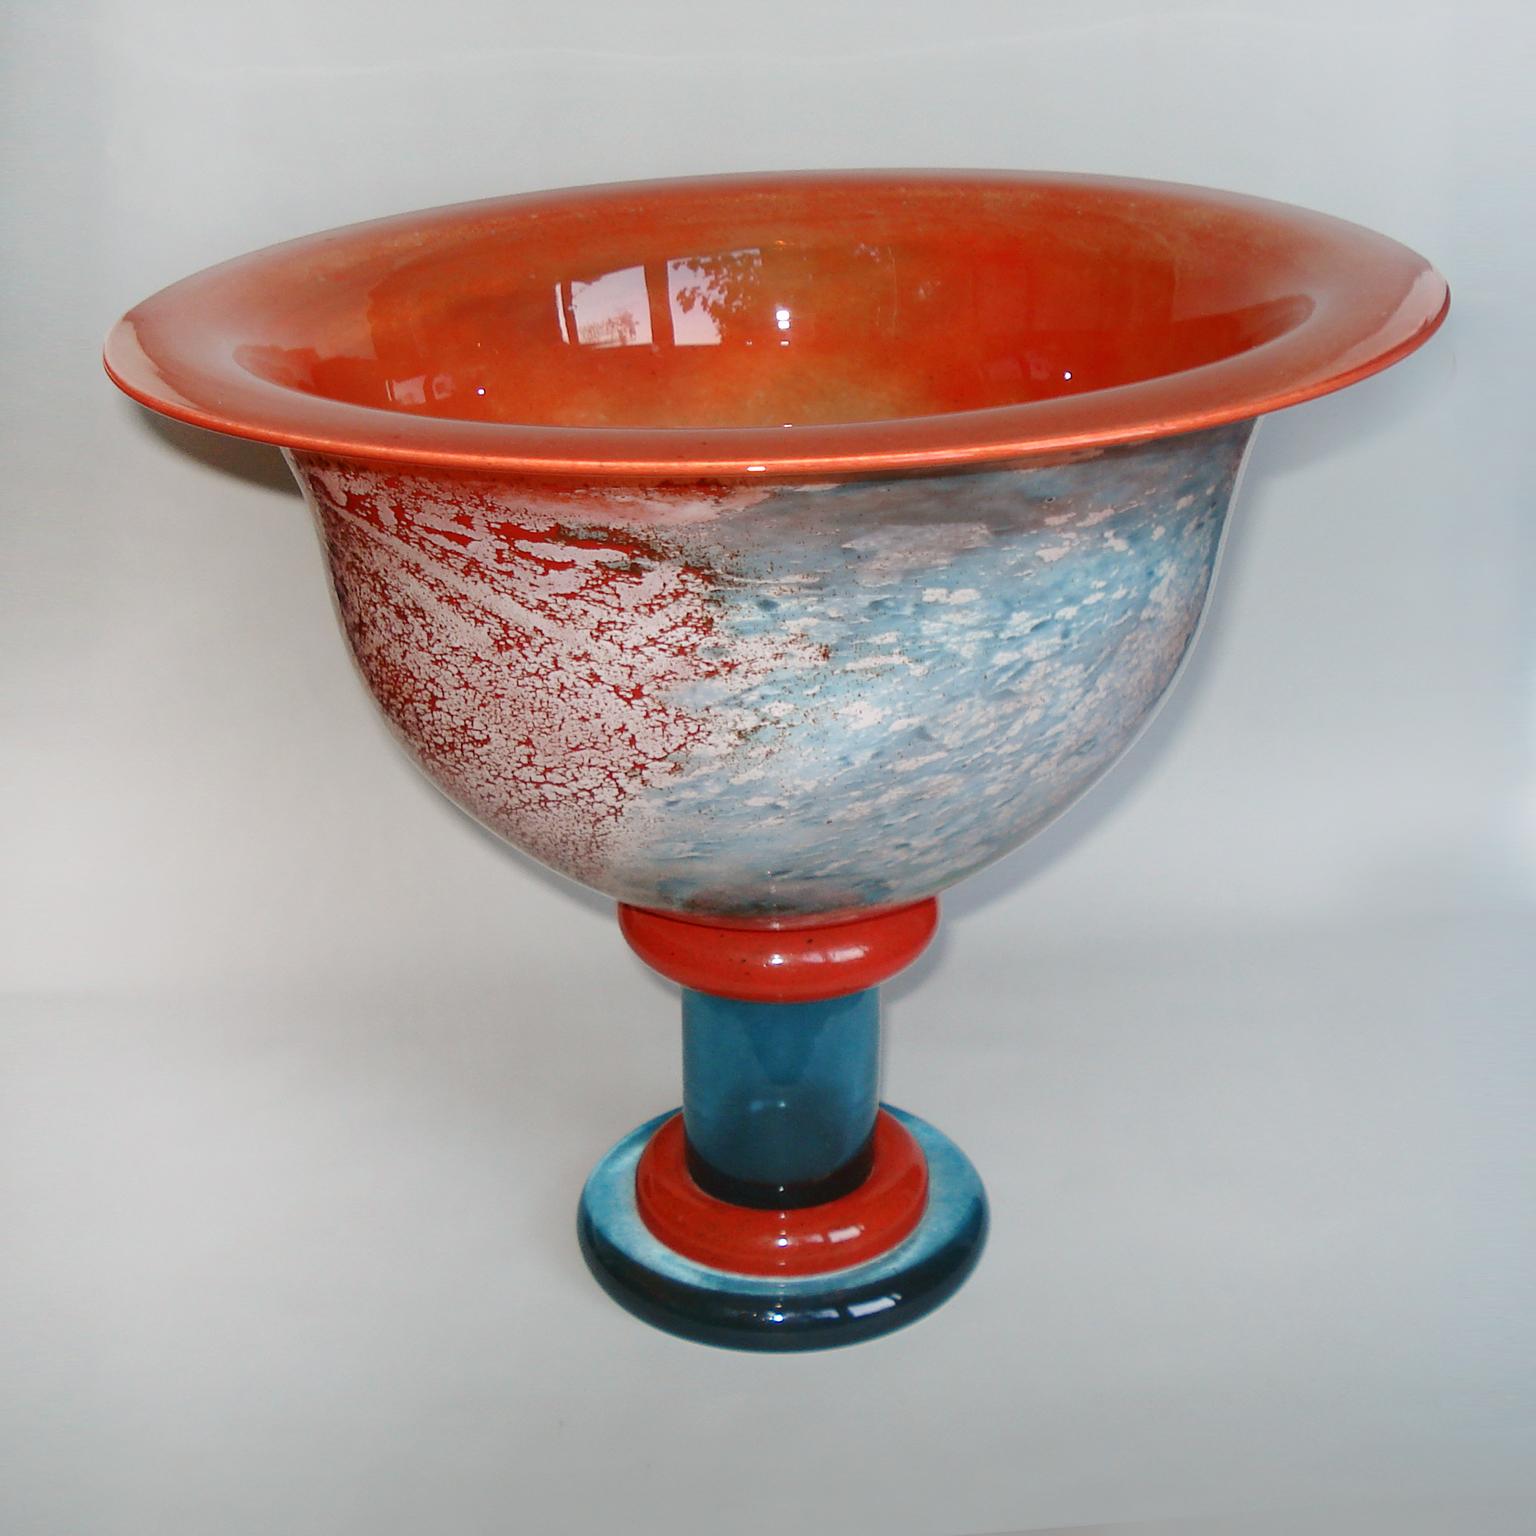 Late 20th Century Scandinavian Design Glass Bowl by Kjell Engman for Kosta Boda, 1980s